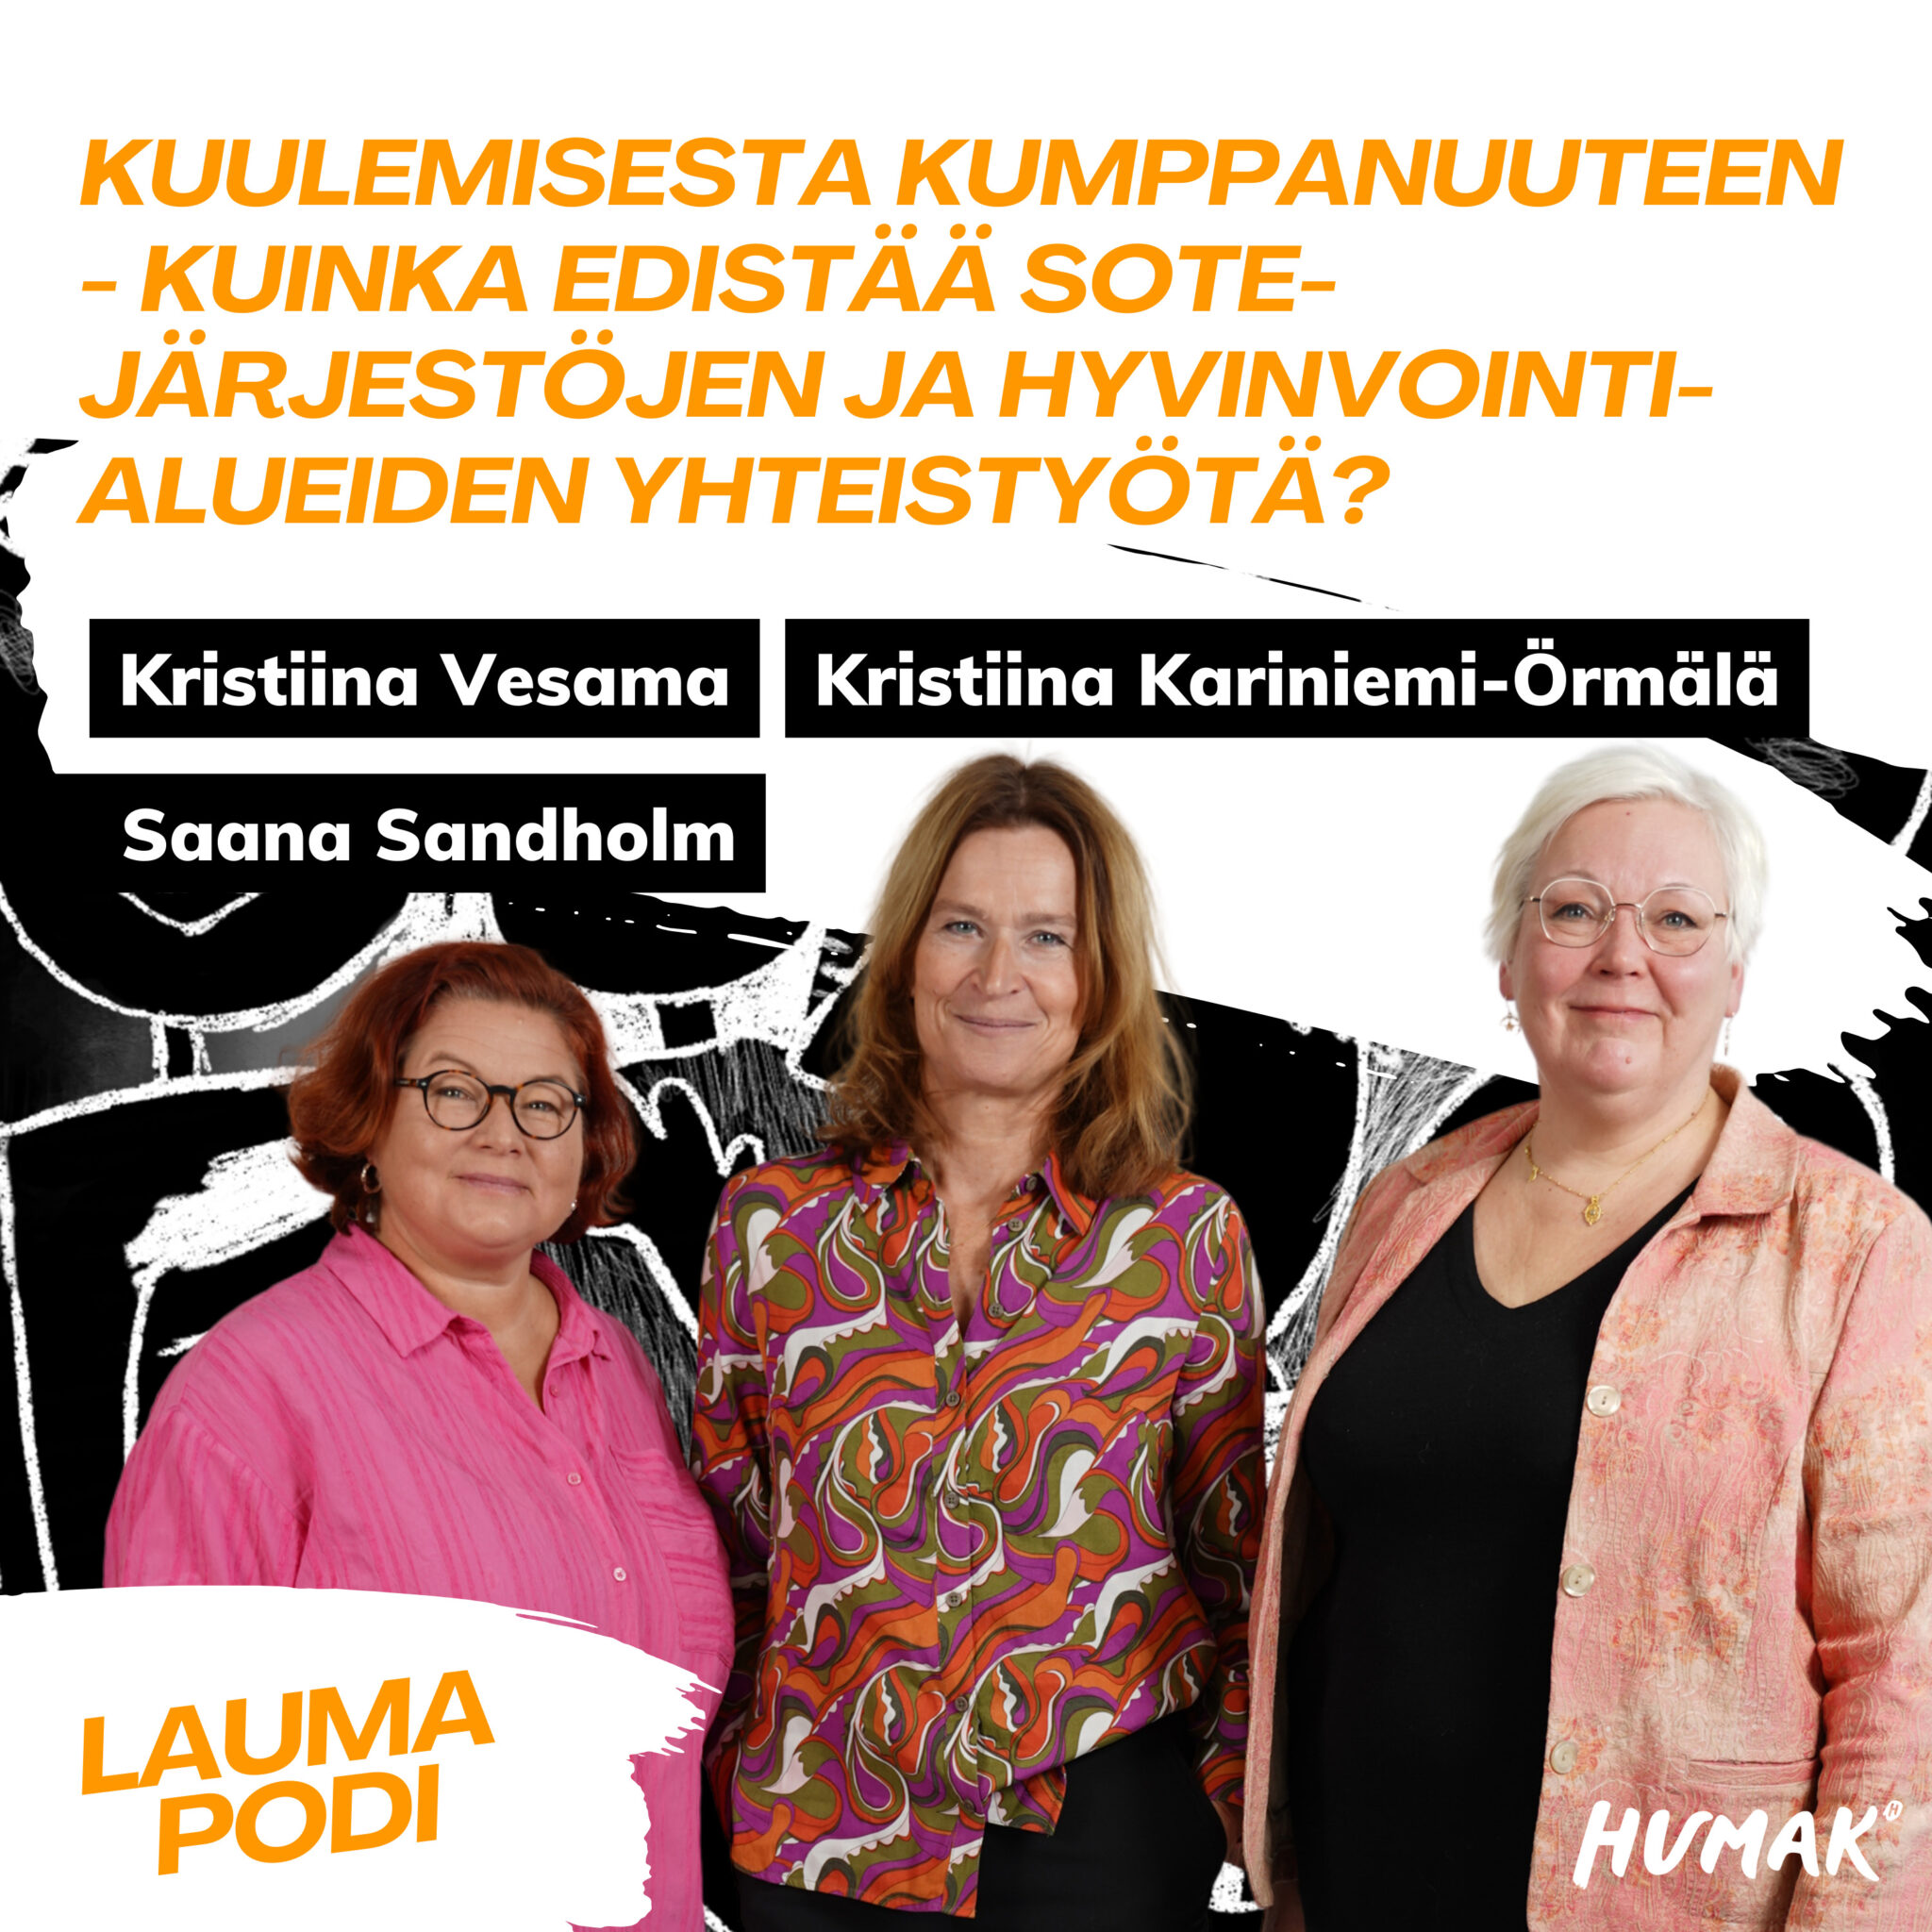 Kolme henkilöä poseeraa rivissä: Kristiina Vesama, Kristiina Kariniemi-Örmälä ja Saana Sandholm. Jakson otsikko "Kuulemisesta kumppanuuteen - Kuinka edistää sote-järjestöjen ja hyvinvointialueiden yhteistyötä?" sekä Humakin logo ja Laumapodi-logo.